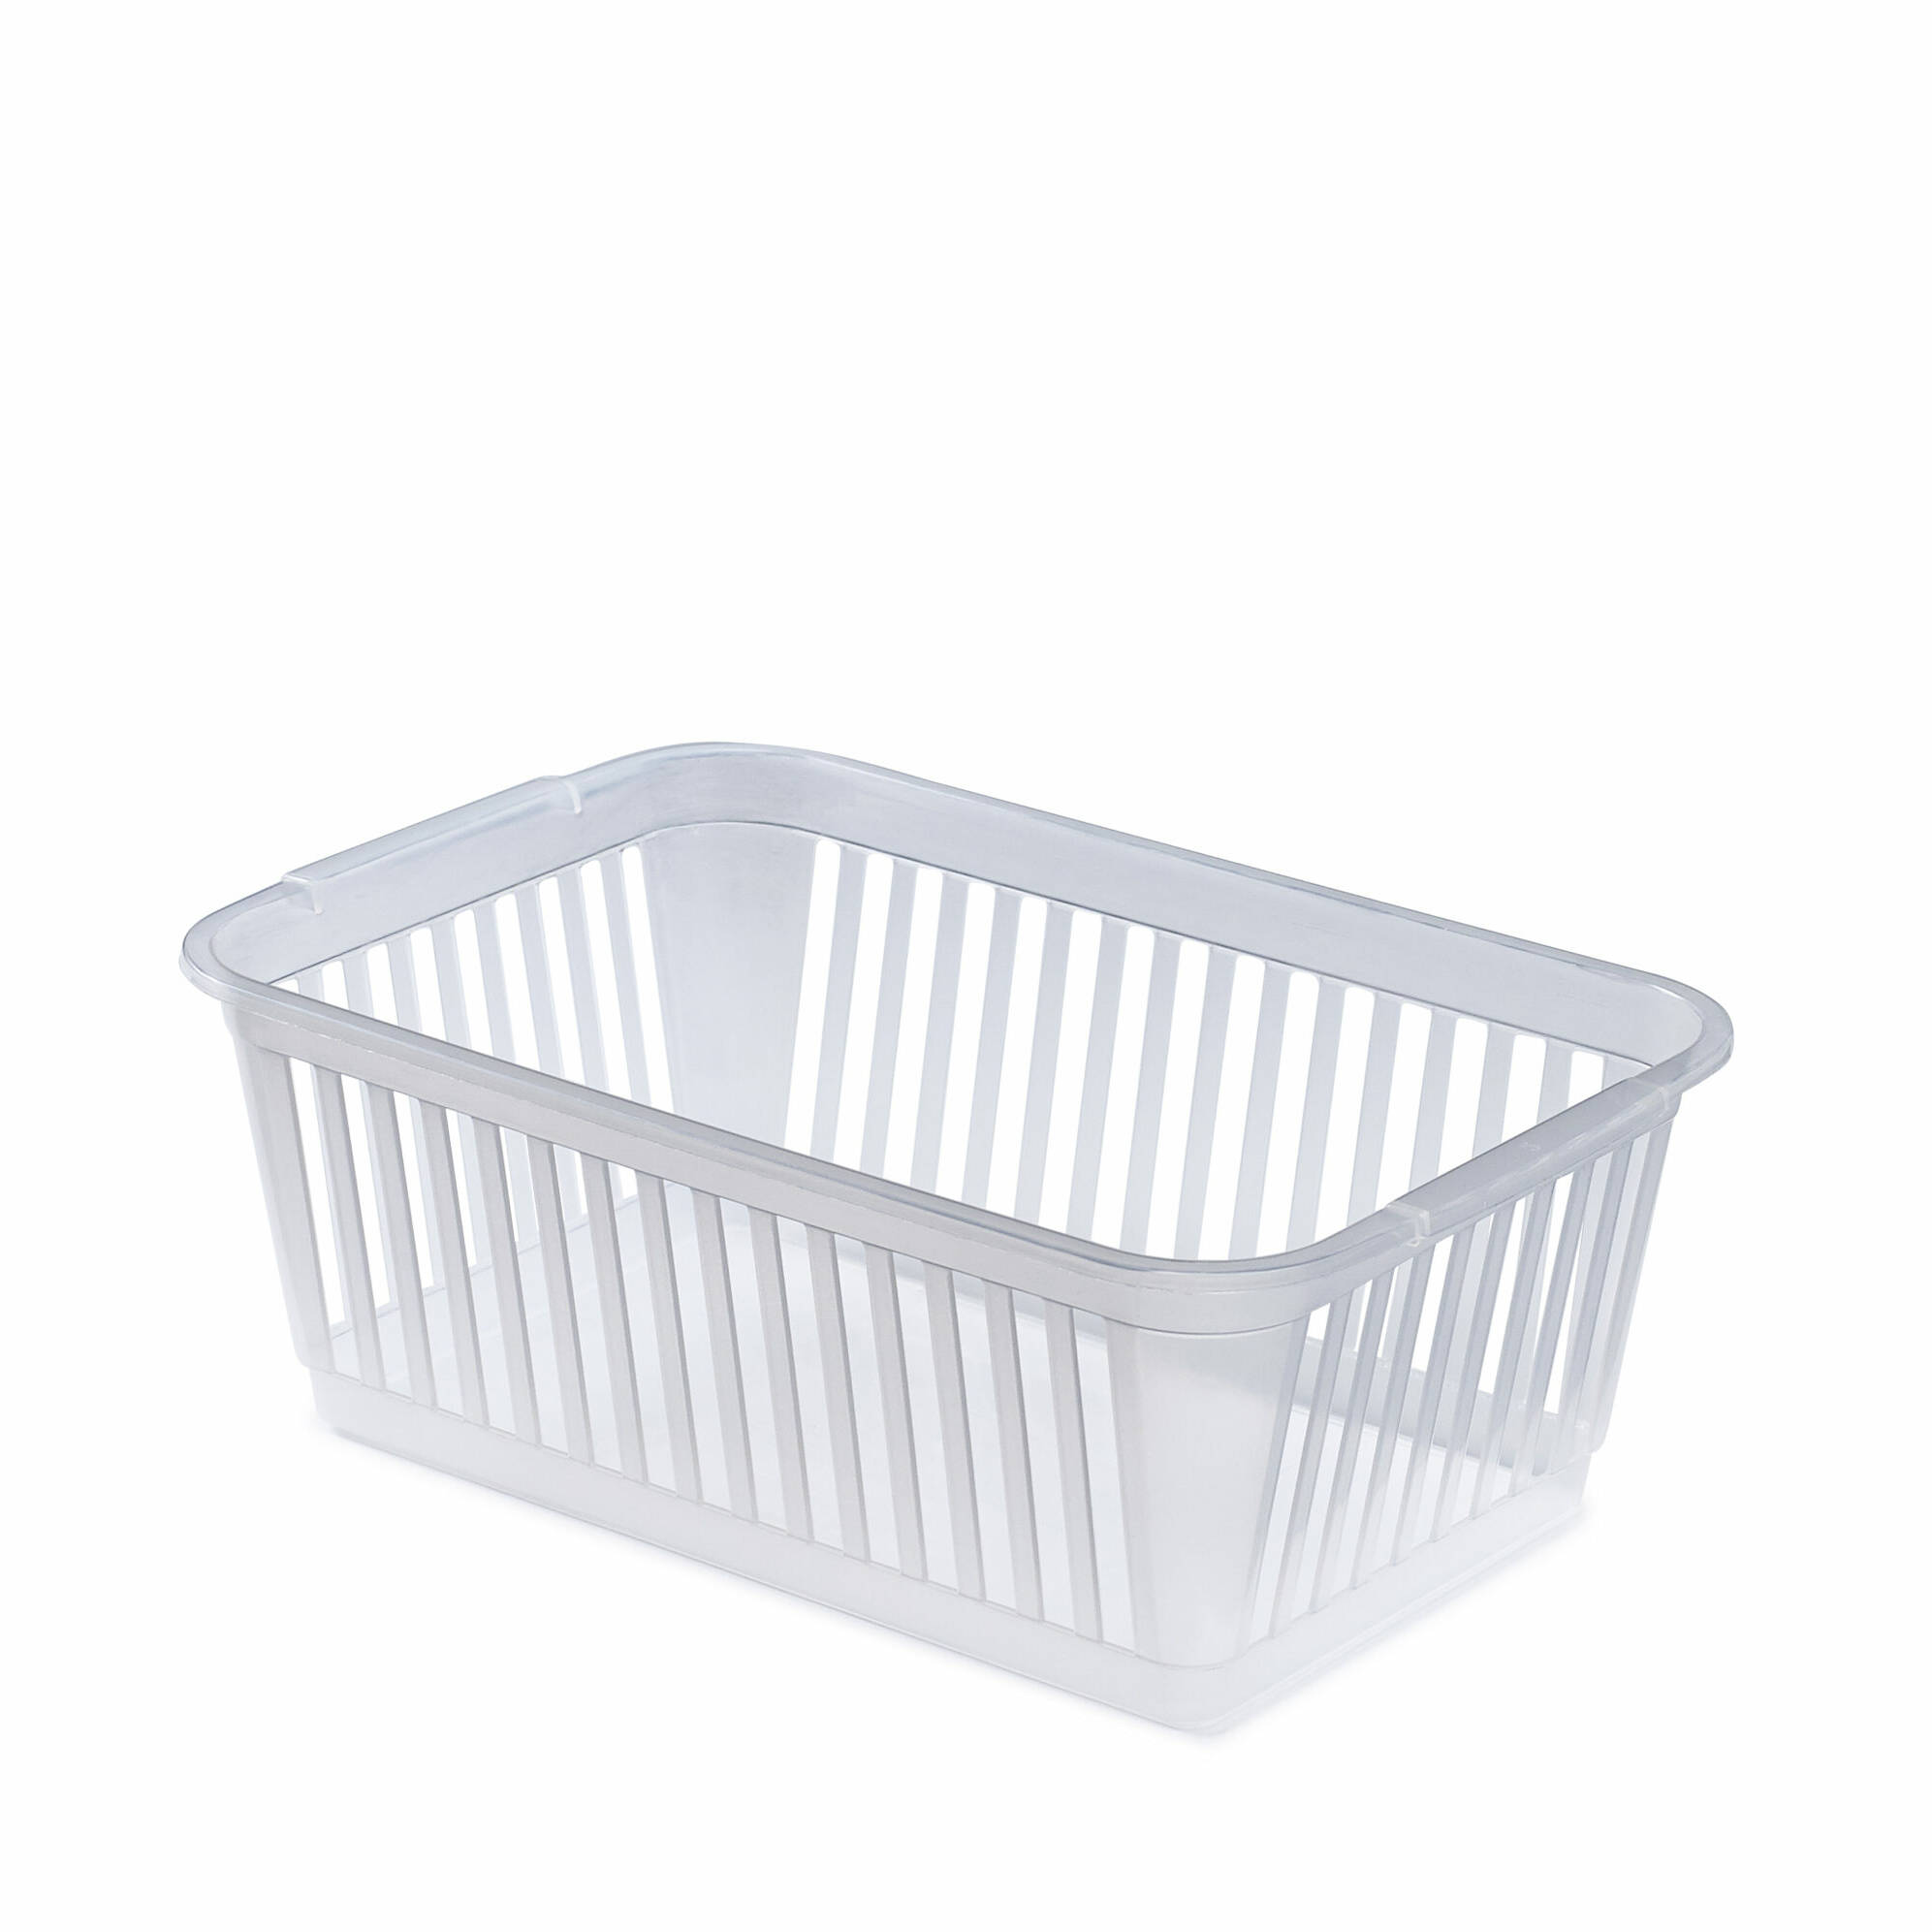 Whitefurze Handy Basket 30cm Natural